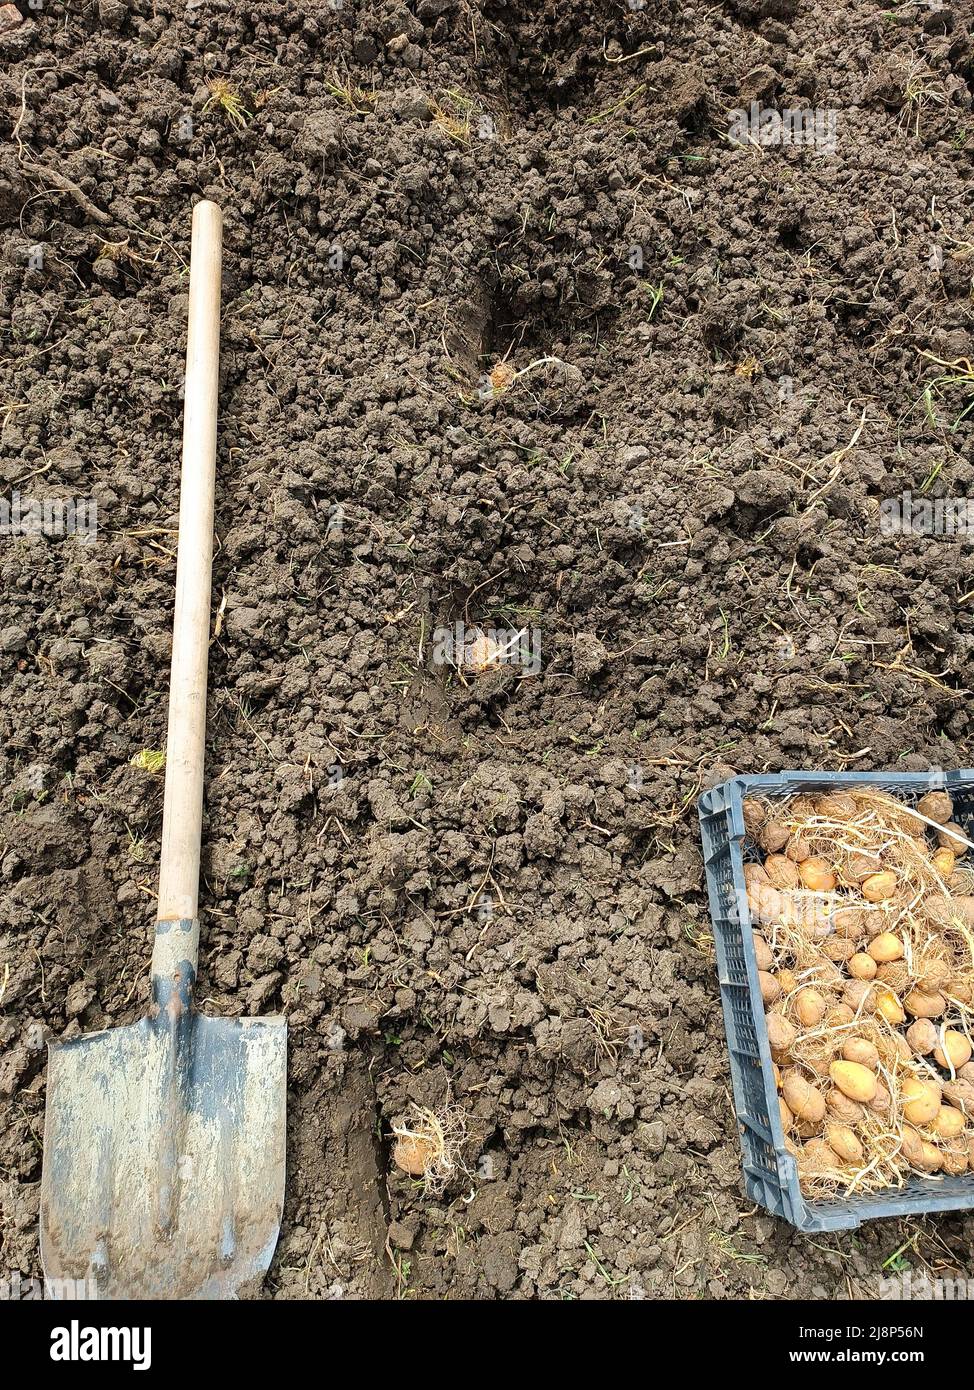 Piantando patate nel giardino. Una scatola con patate germogliate, una pala nel campo e buchi nel terreno con un tubero. Foto Stock